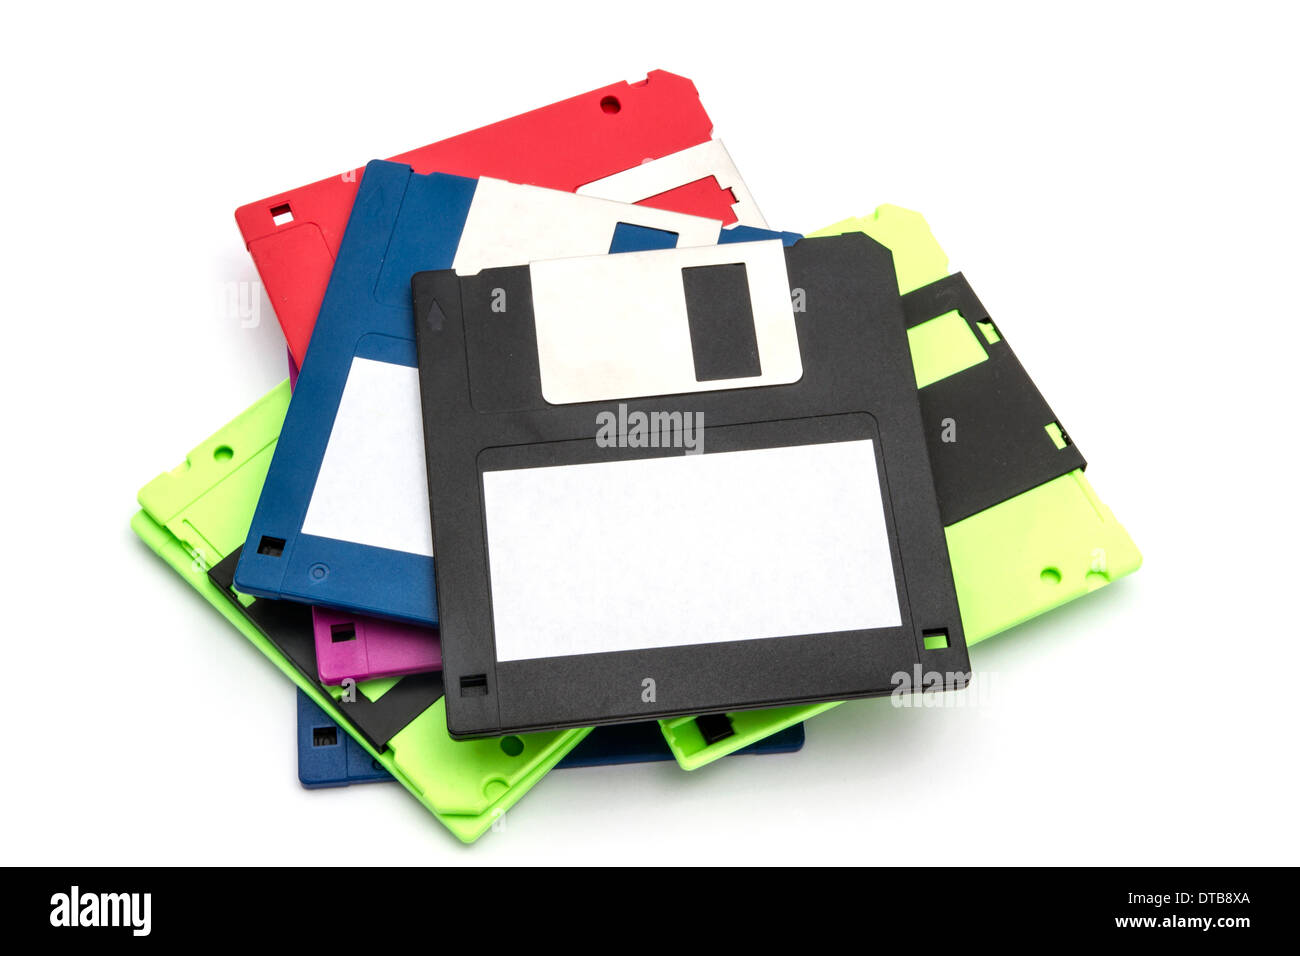 Computer floppy disk closeup on white Stock Photo